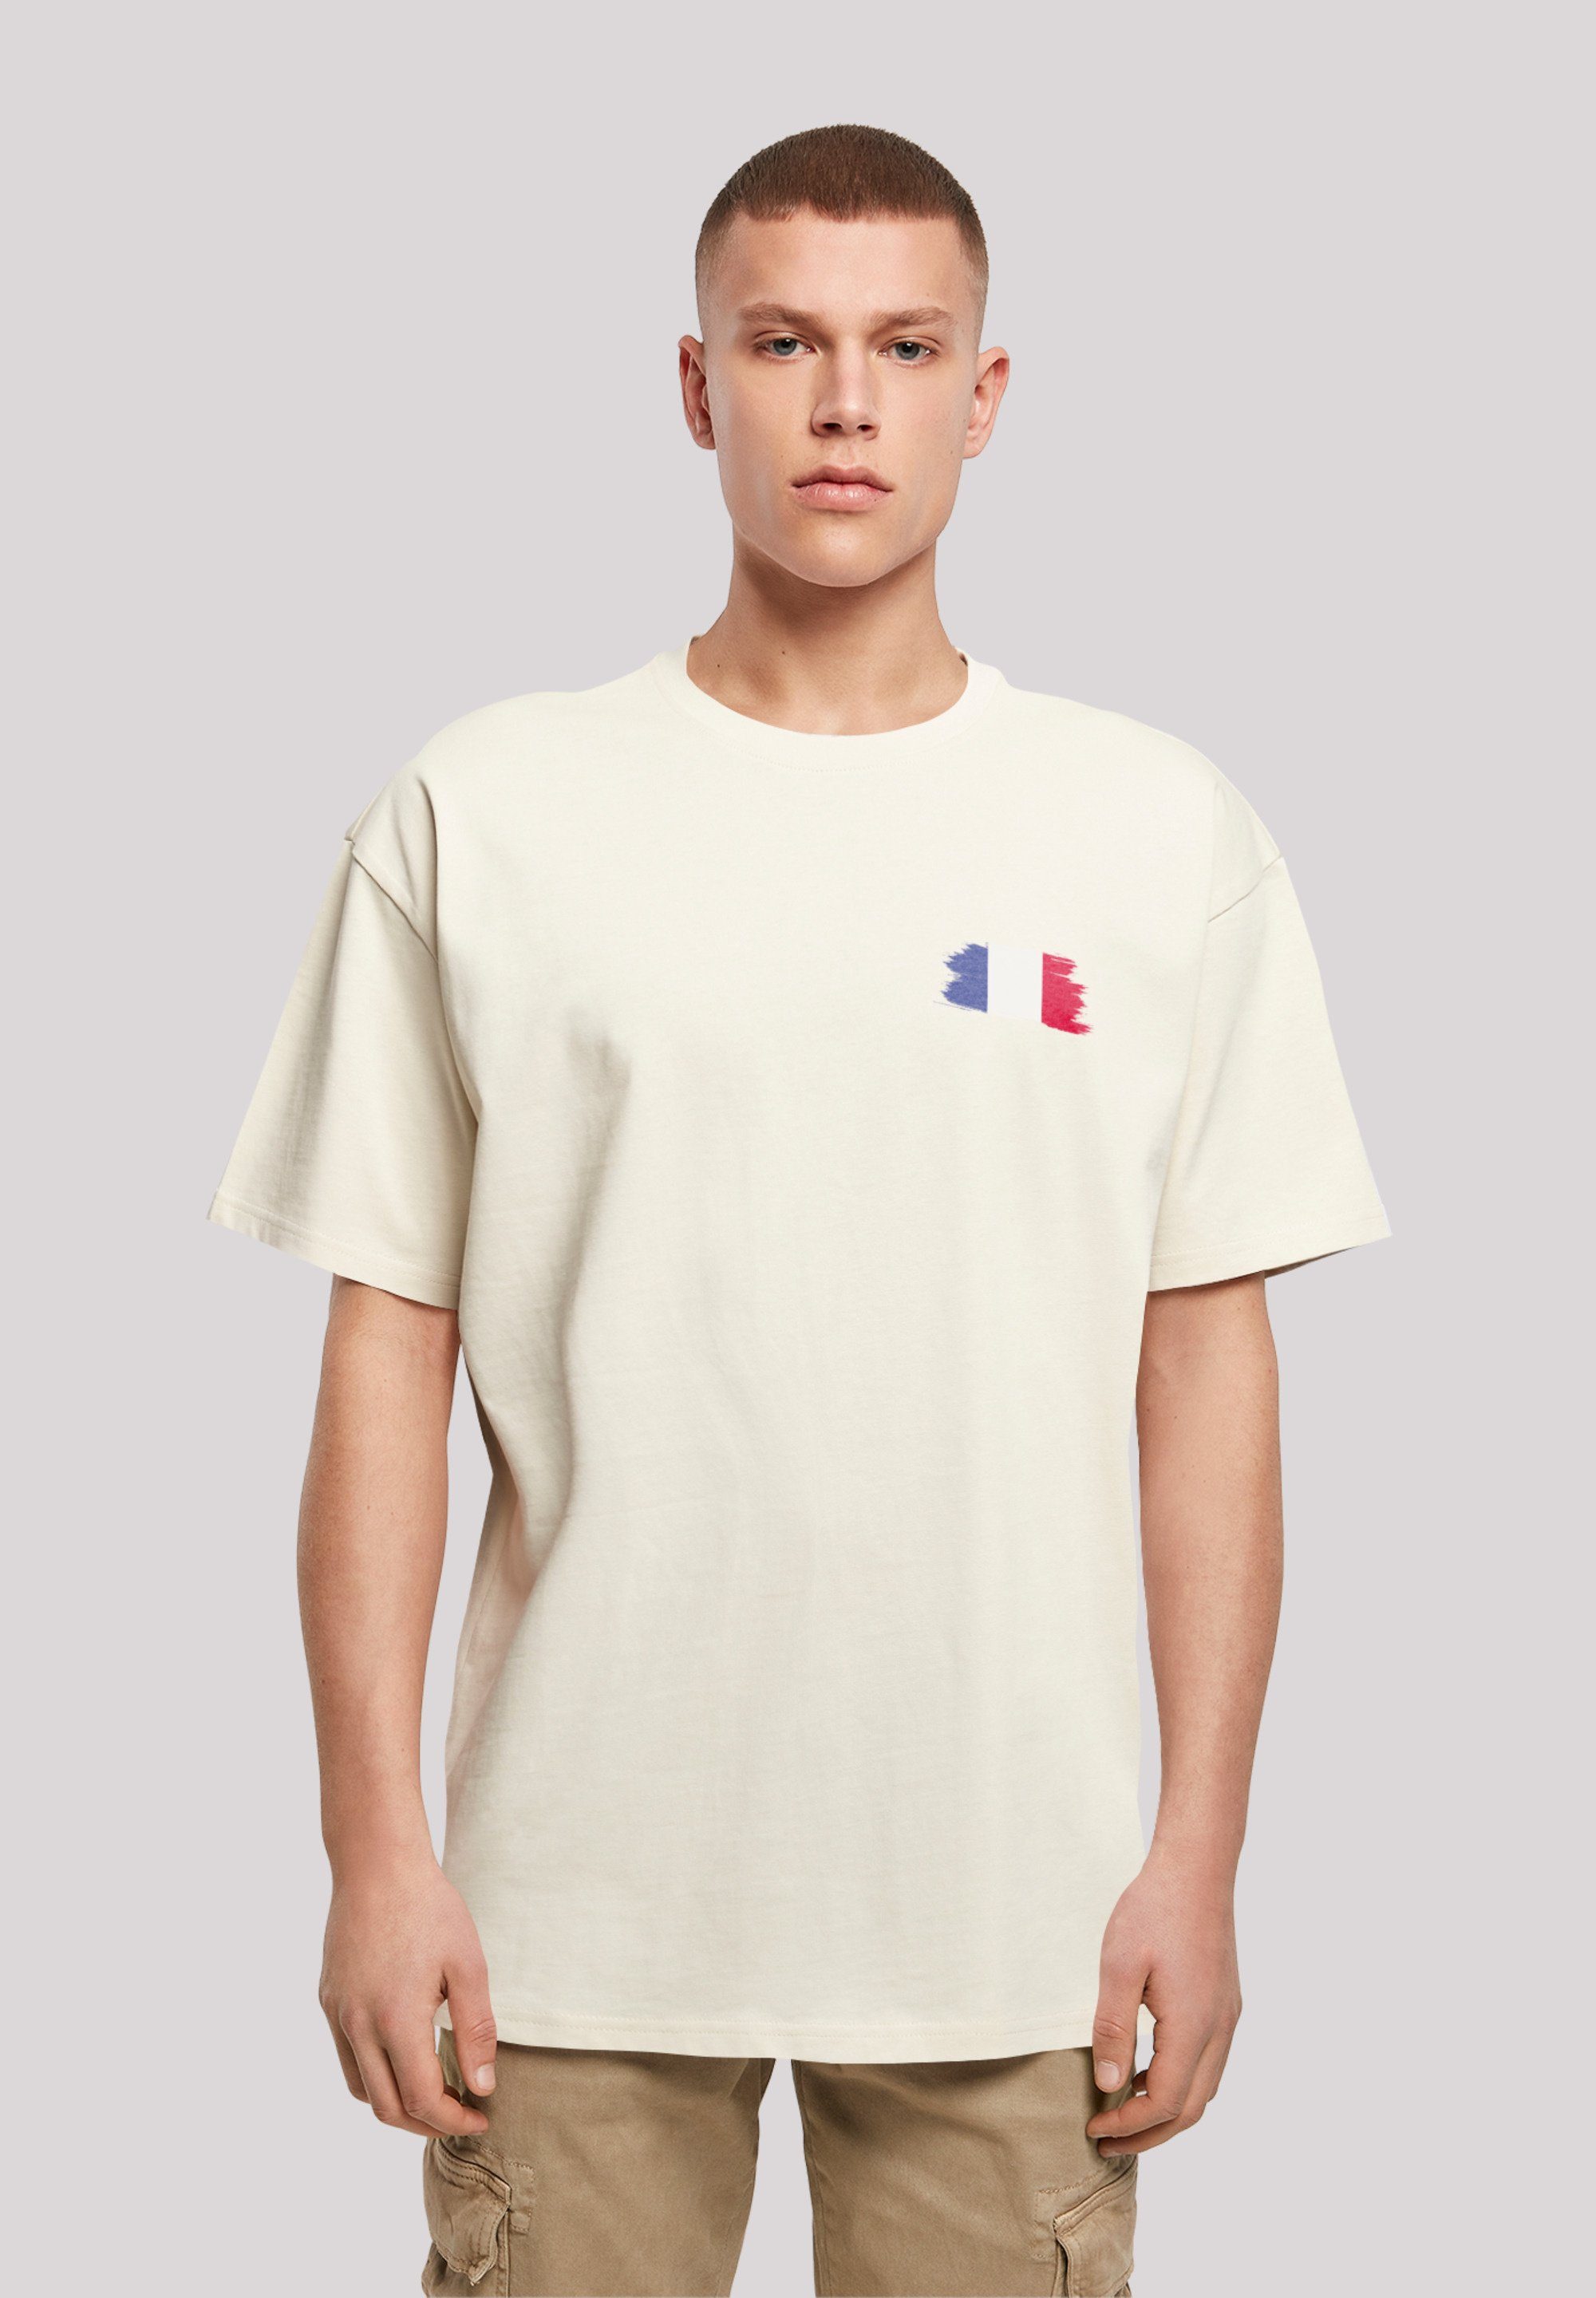 F4NT4STIC T-Shirt France und Print, Schultern Fahne Frankreich Flagge überschnittene Weite Passform